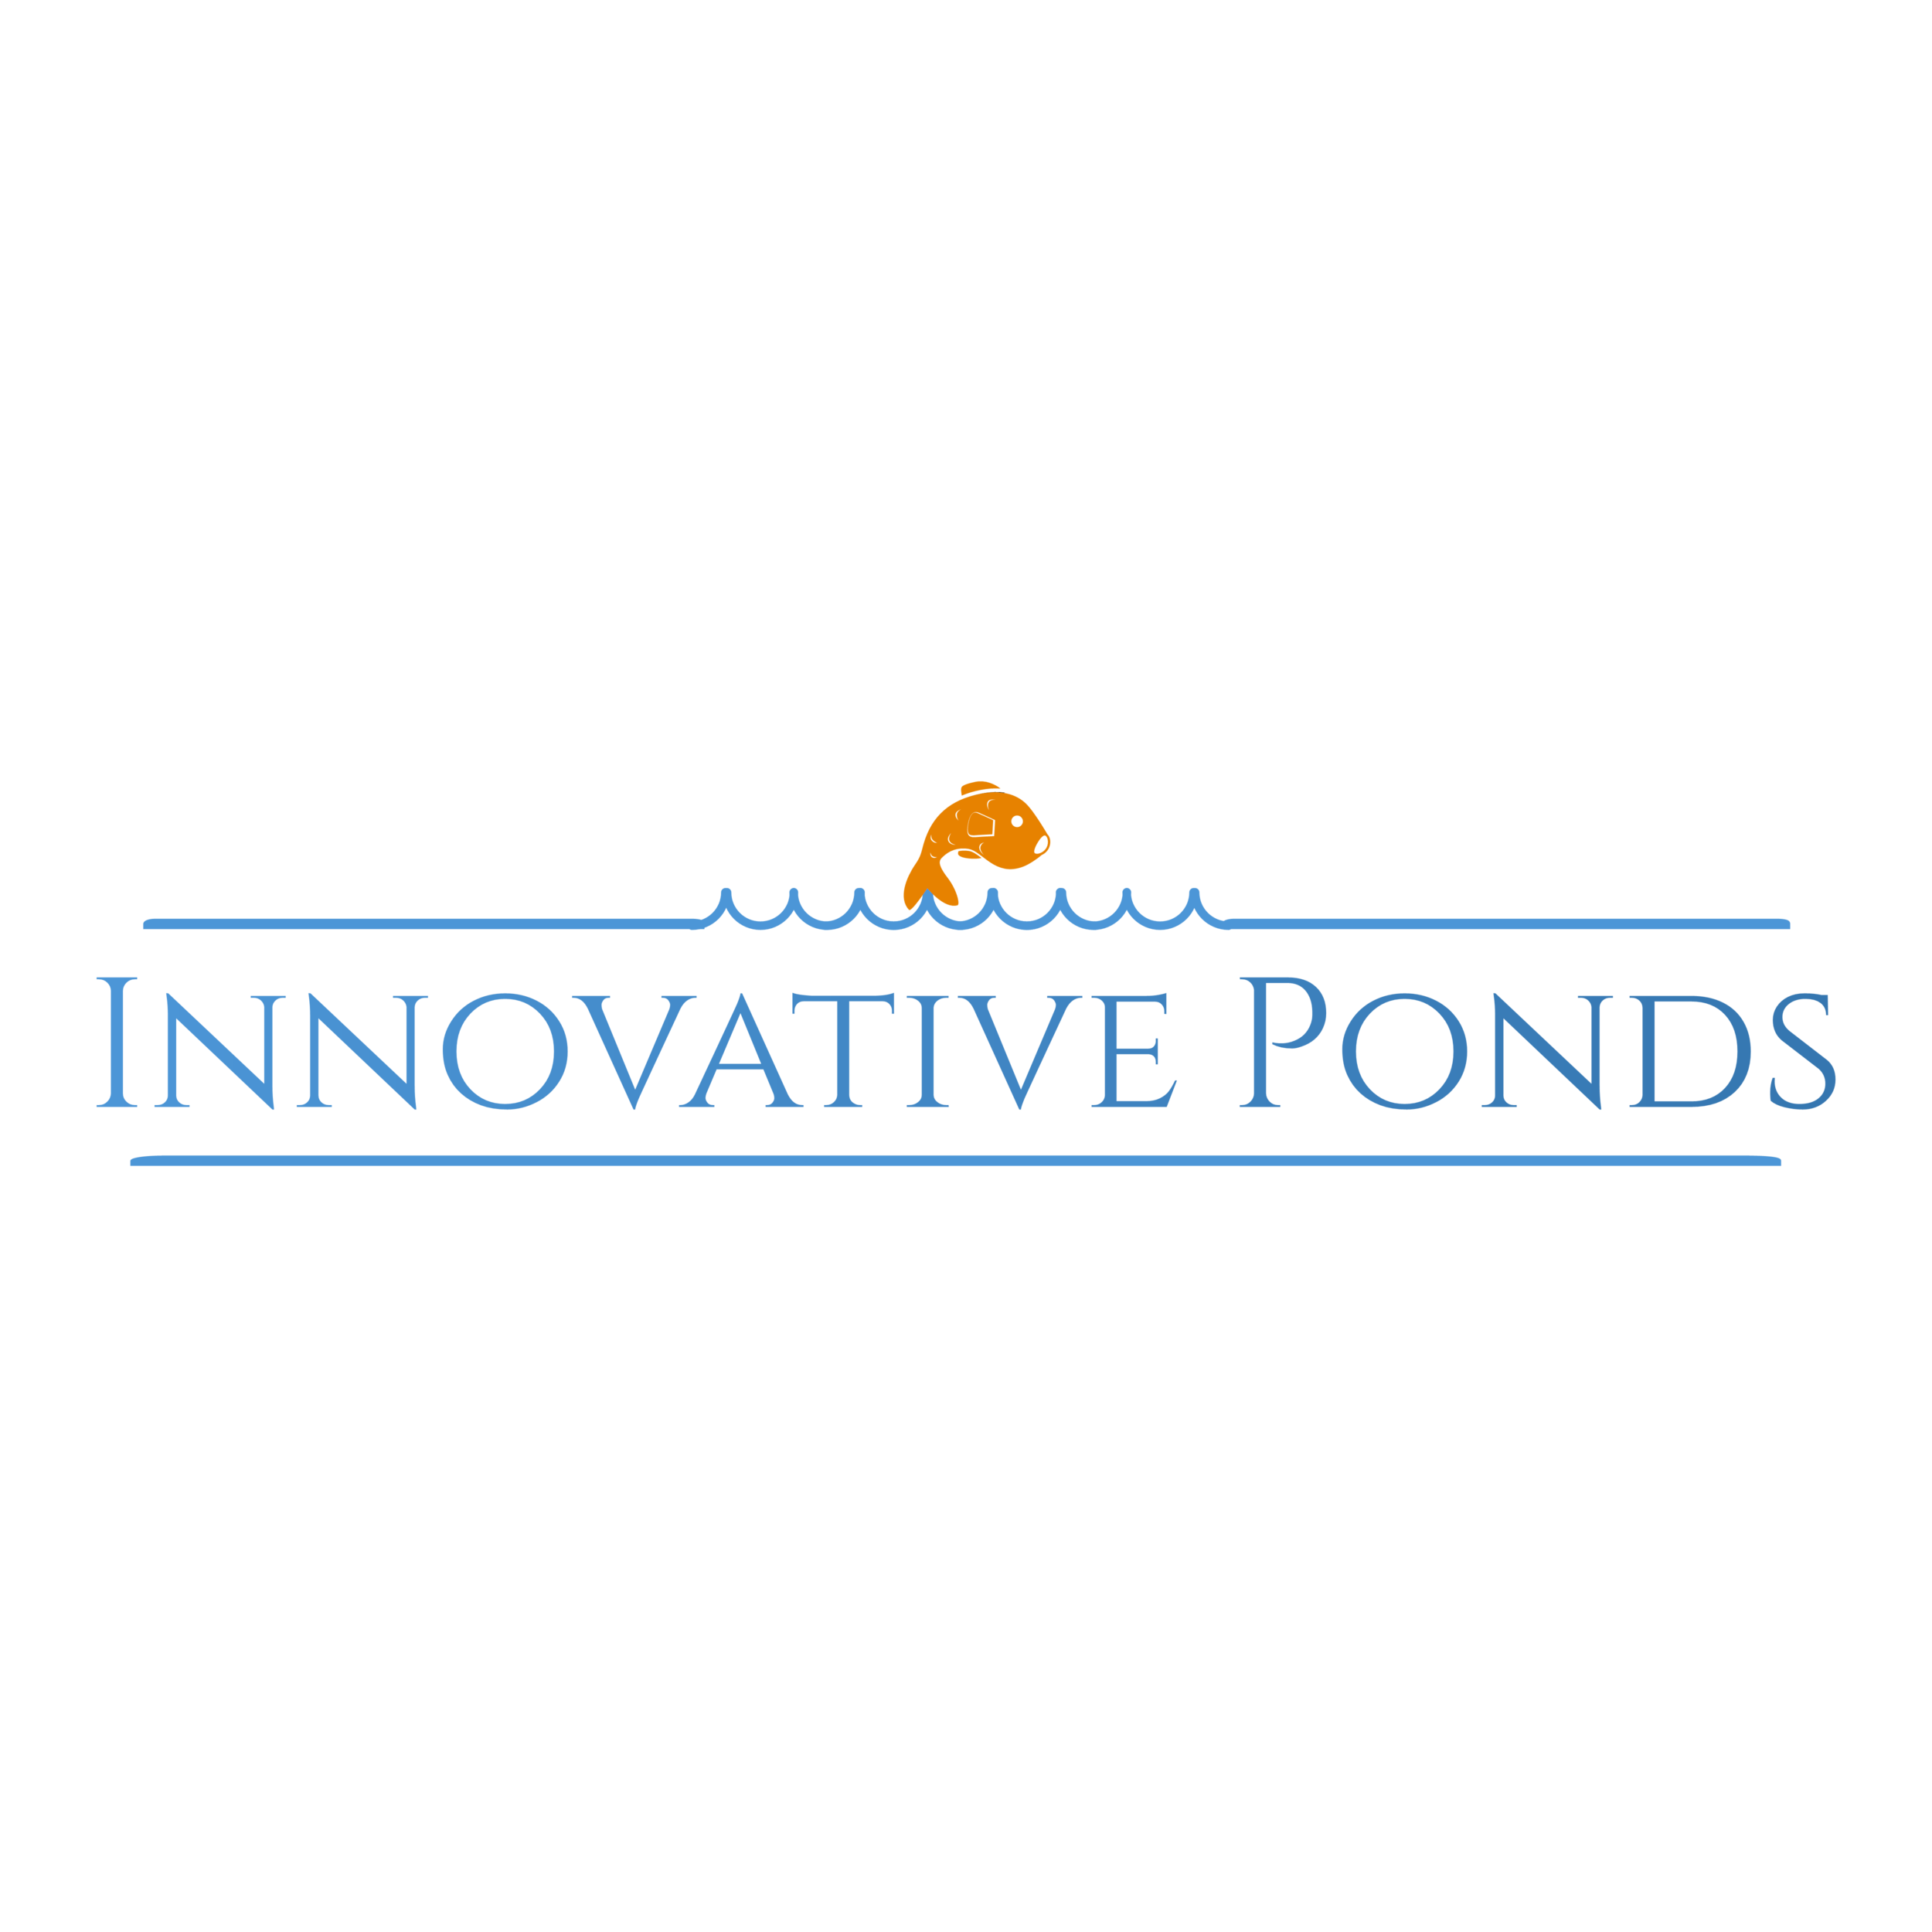 About Inovative Ponds